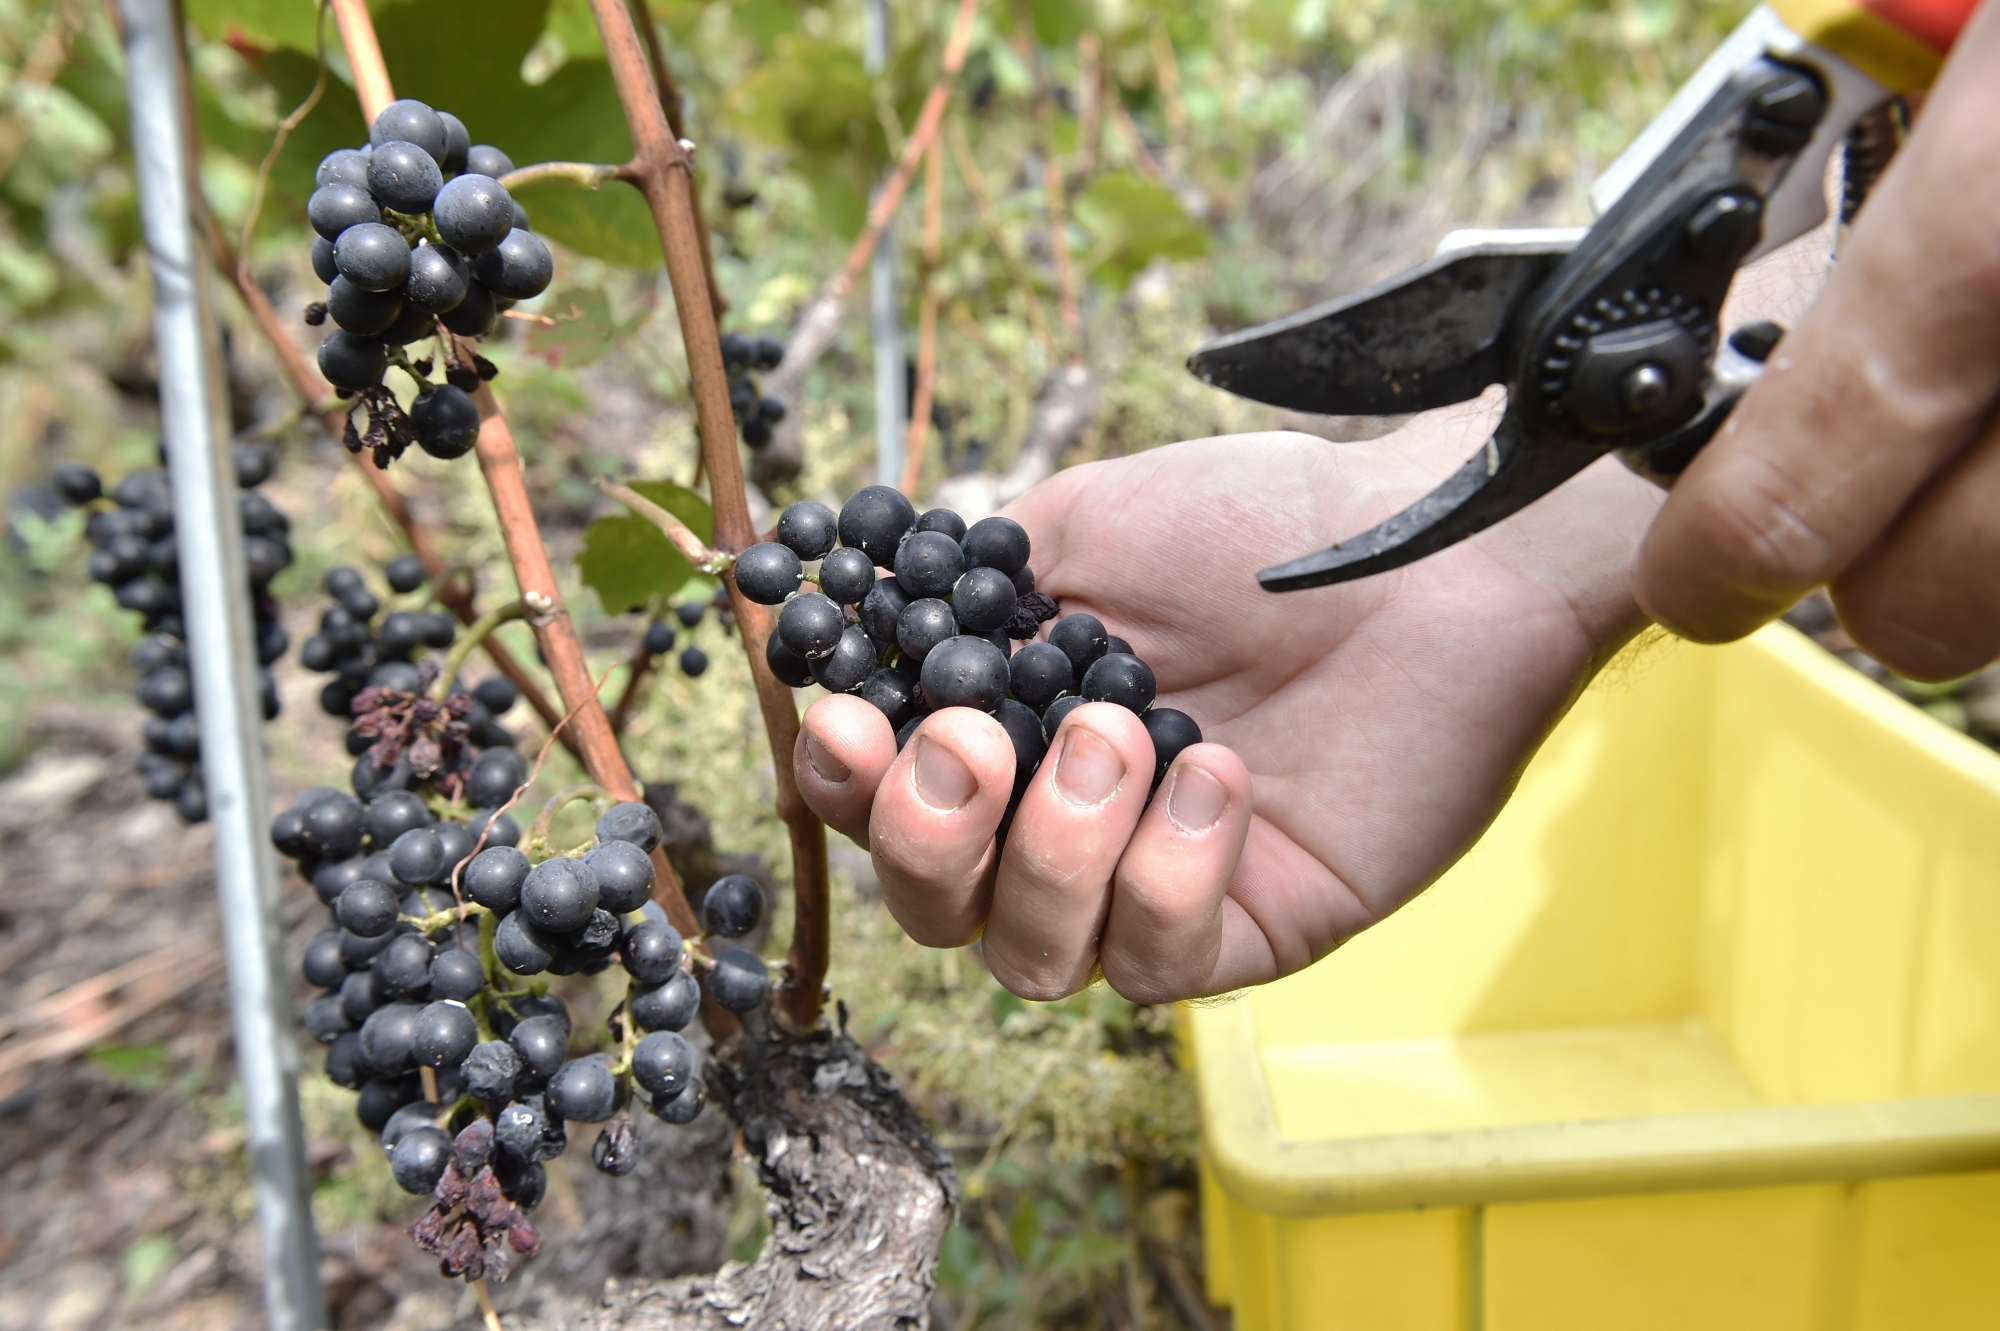 Toutes les vignes seront-elles vendangées? La question peut se poser dans un contexte tendu et inédit pour les producteurs de raisins.